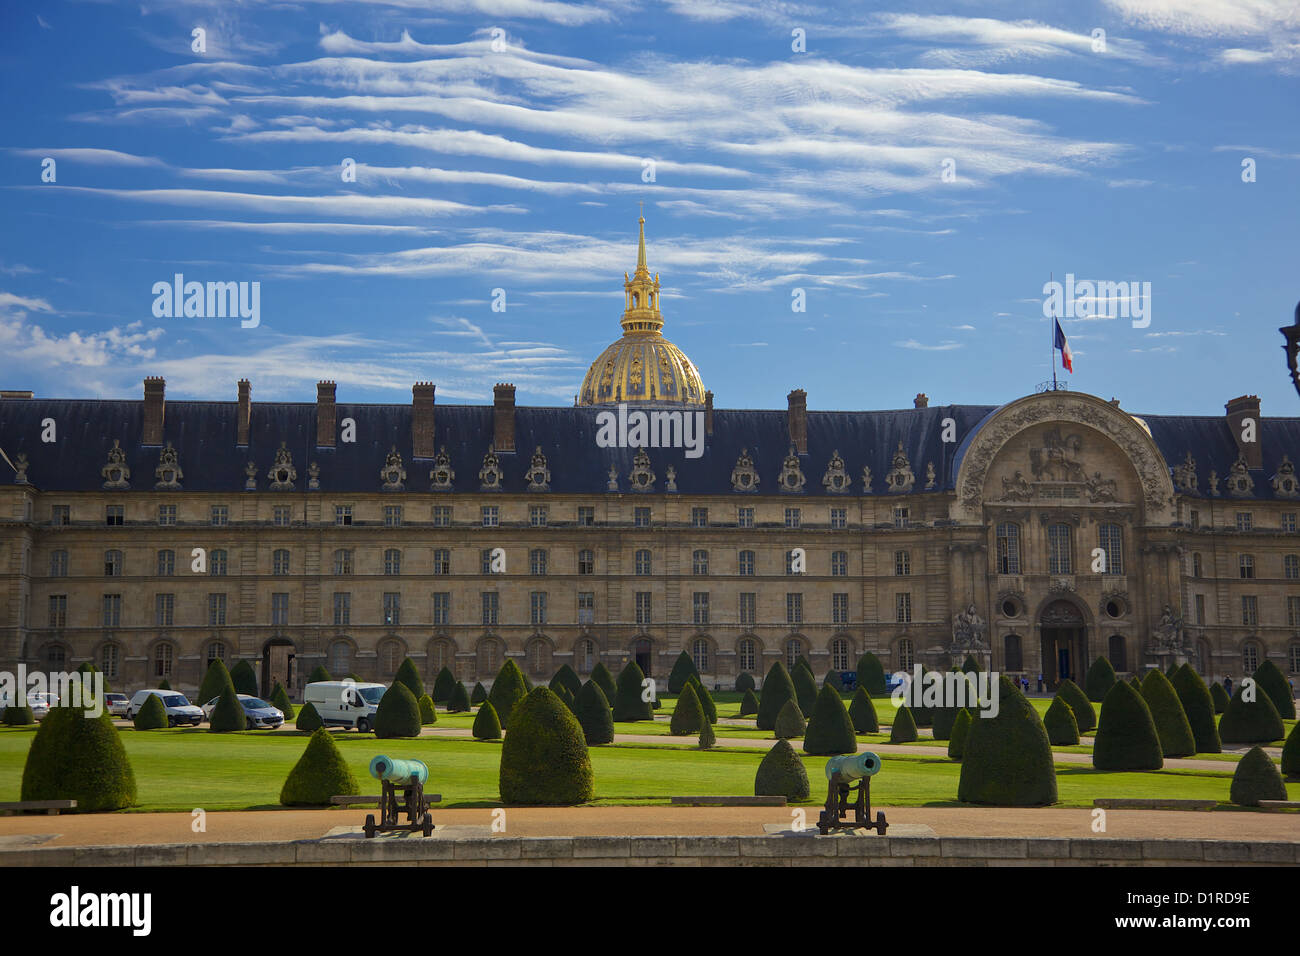 L'Hôtel des Invalides, Paris France. L'Hôtel des Invalides abrite le musée national de l'armée et le tombeau de Napoléon . Banque D'Images